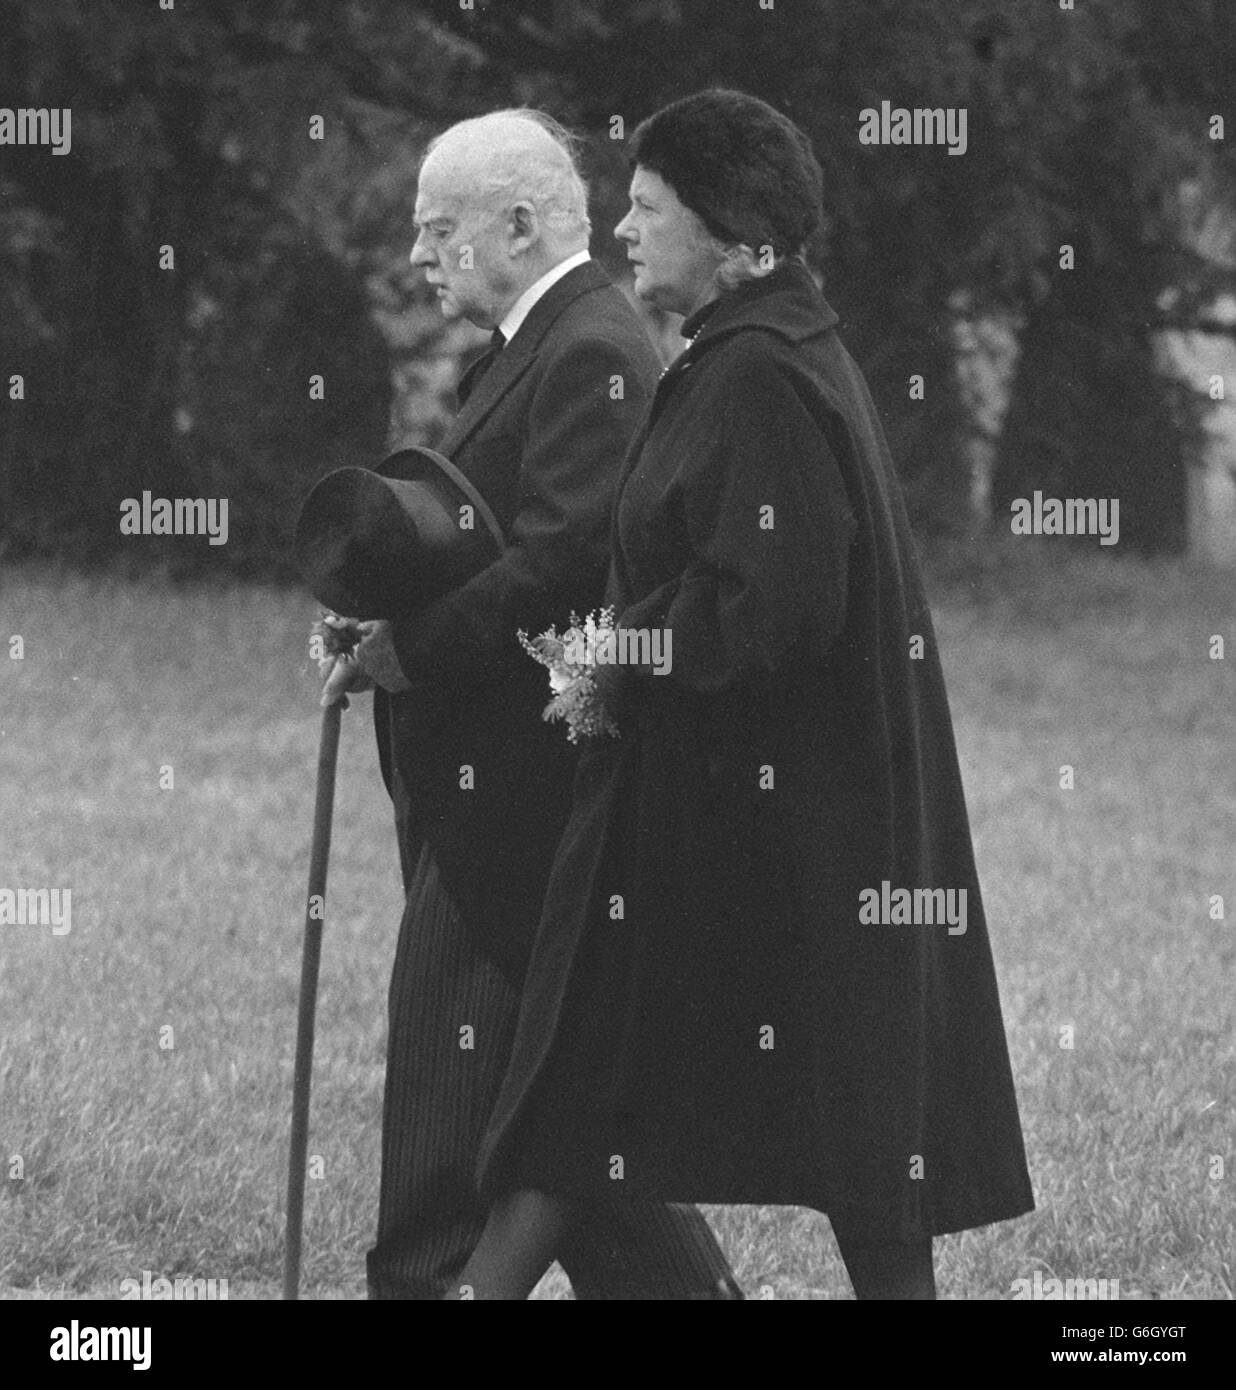 Dame Agatha Christie lo scrittore criminale che morì all'età di 85 anni, fu sepolto nella chiesa parrocchiale di Cholsey, nei pressi di Wallingford. Due dei suoi lutto sono la vedova, Sir Max Mallowan, l'archeologo, e sua figlia, la signora Rosalind Hicks, in viaggio verso il cimitero. Foto Stock